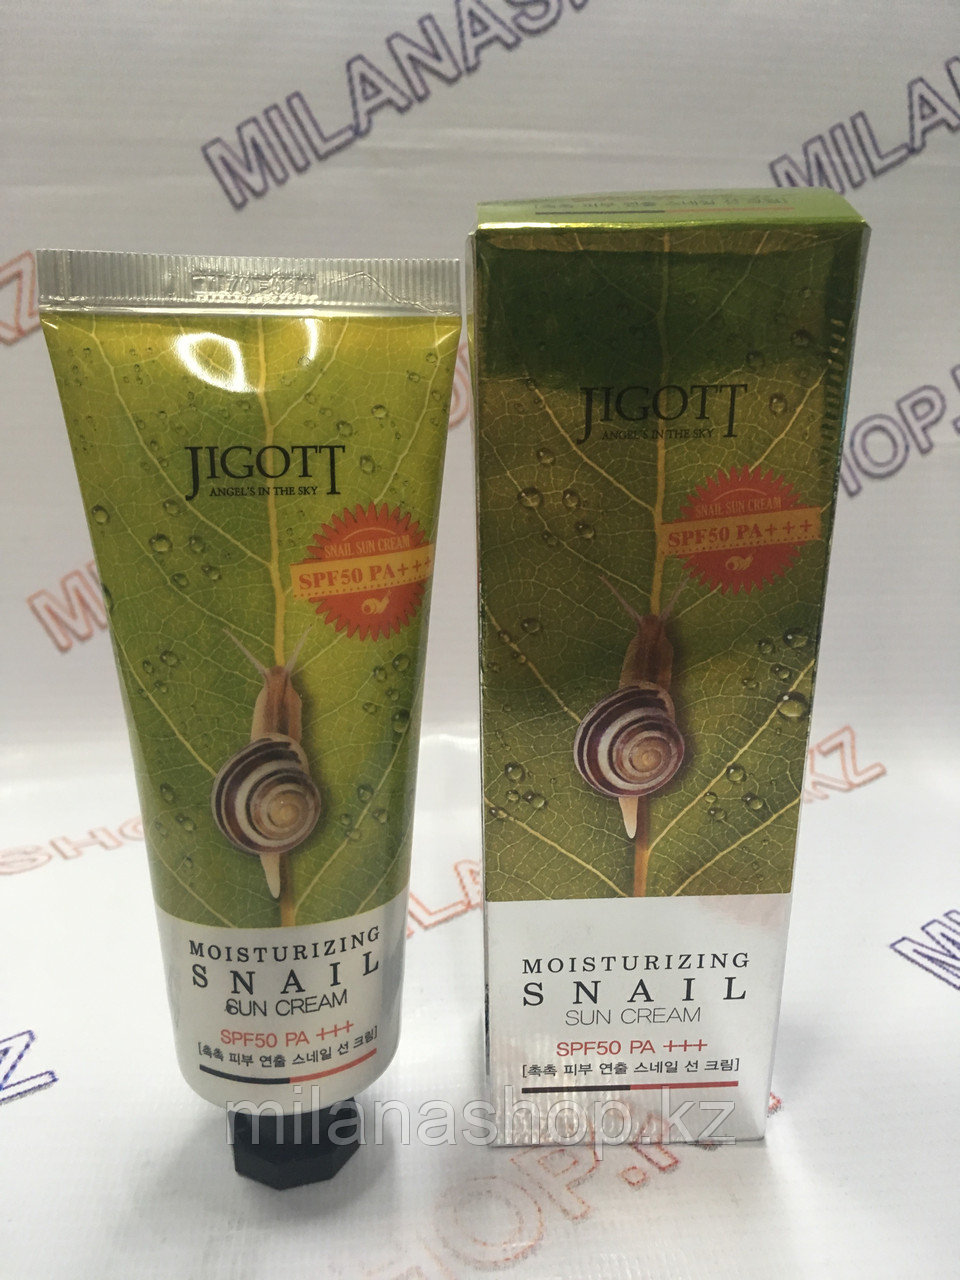 Jigott Moisturizing Snail Sun Cream SPF 50 -  Солнцезащитный крем для лица с экстрактом улитки